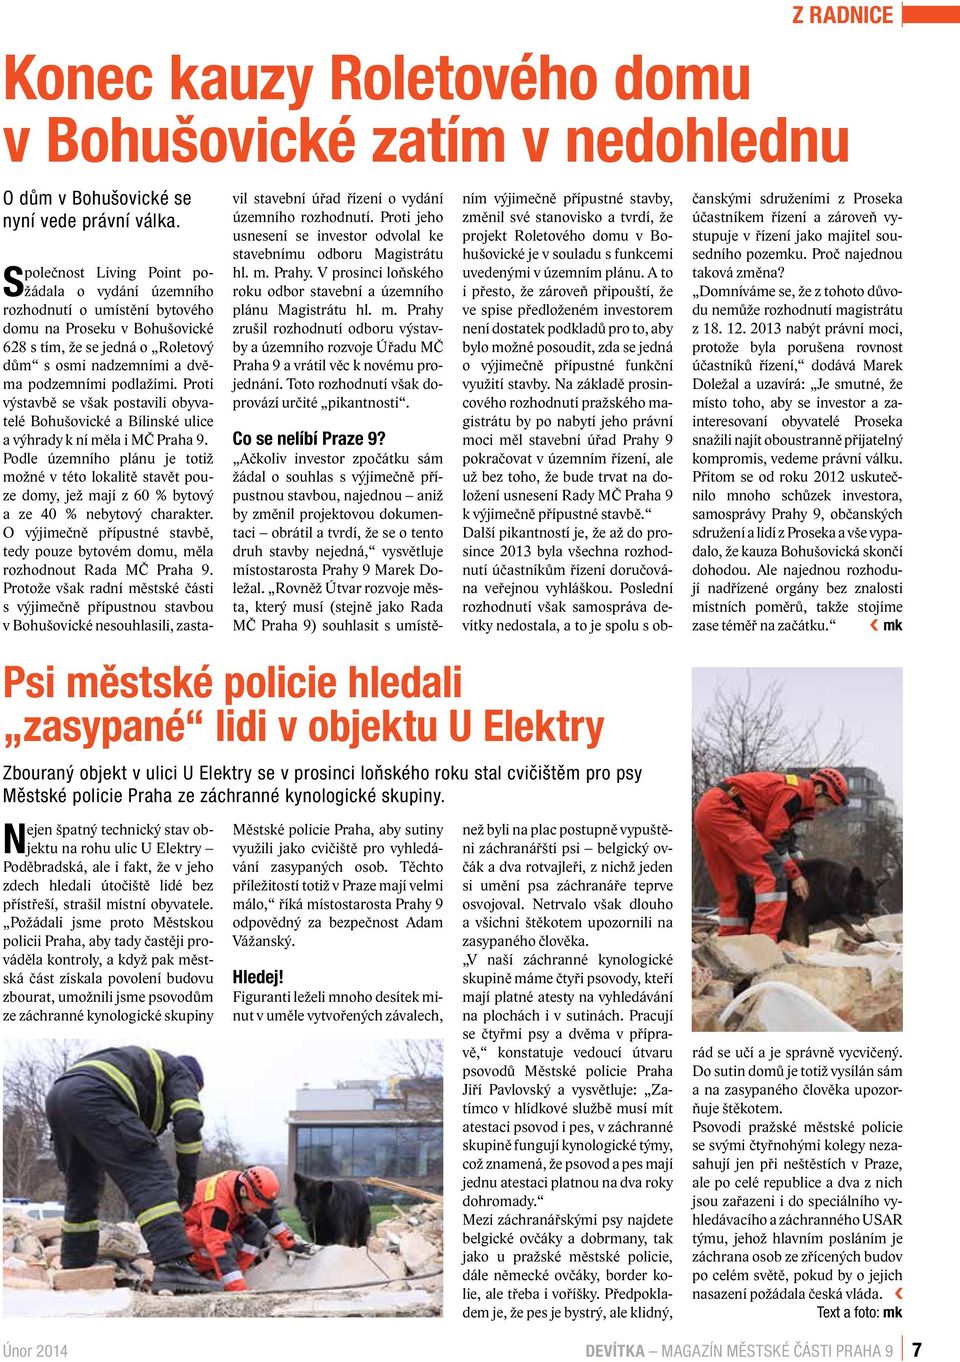 Požádali jsme proto Městskou policii Praha, aby tady častěji prováděla kontroly, a když pak městská část získala povolení budovu zbourat, umožnili jsme psovodům ze záchranné kynologické skupiny